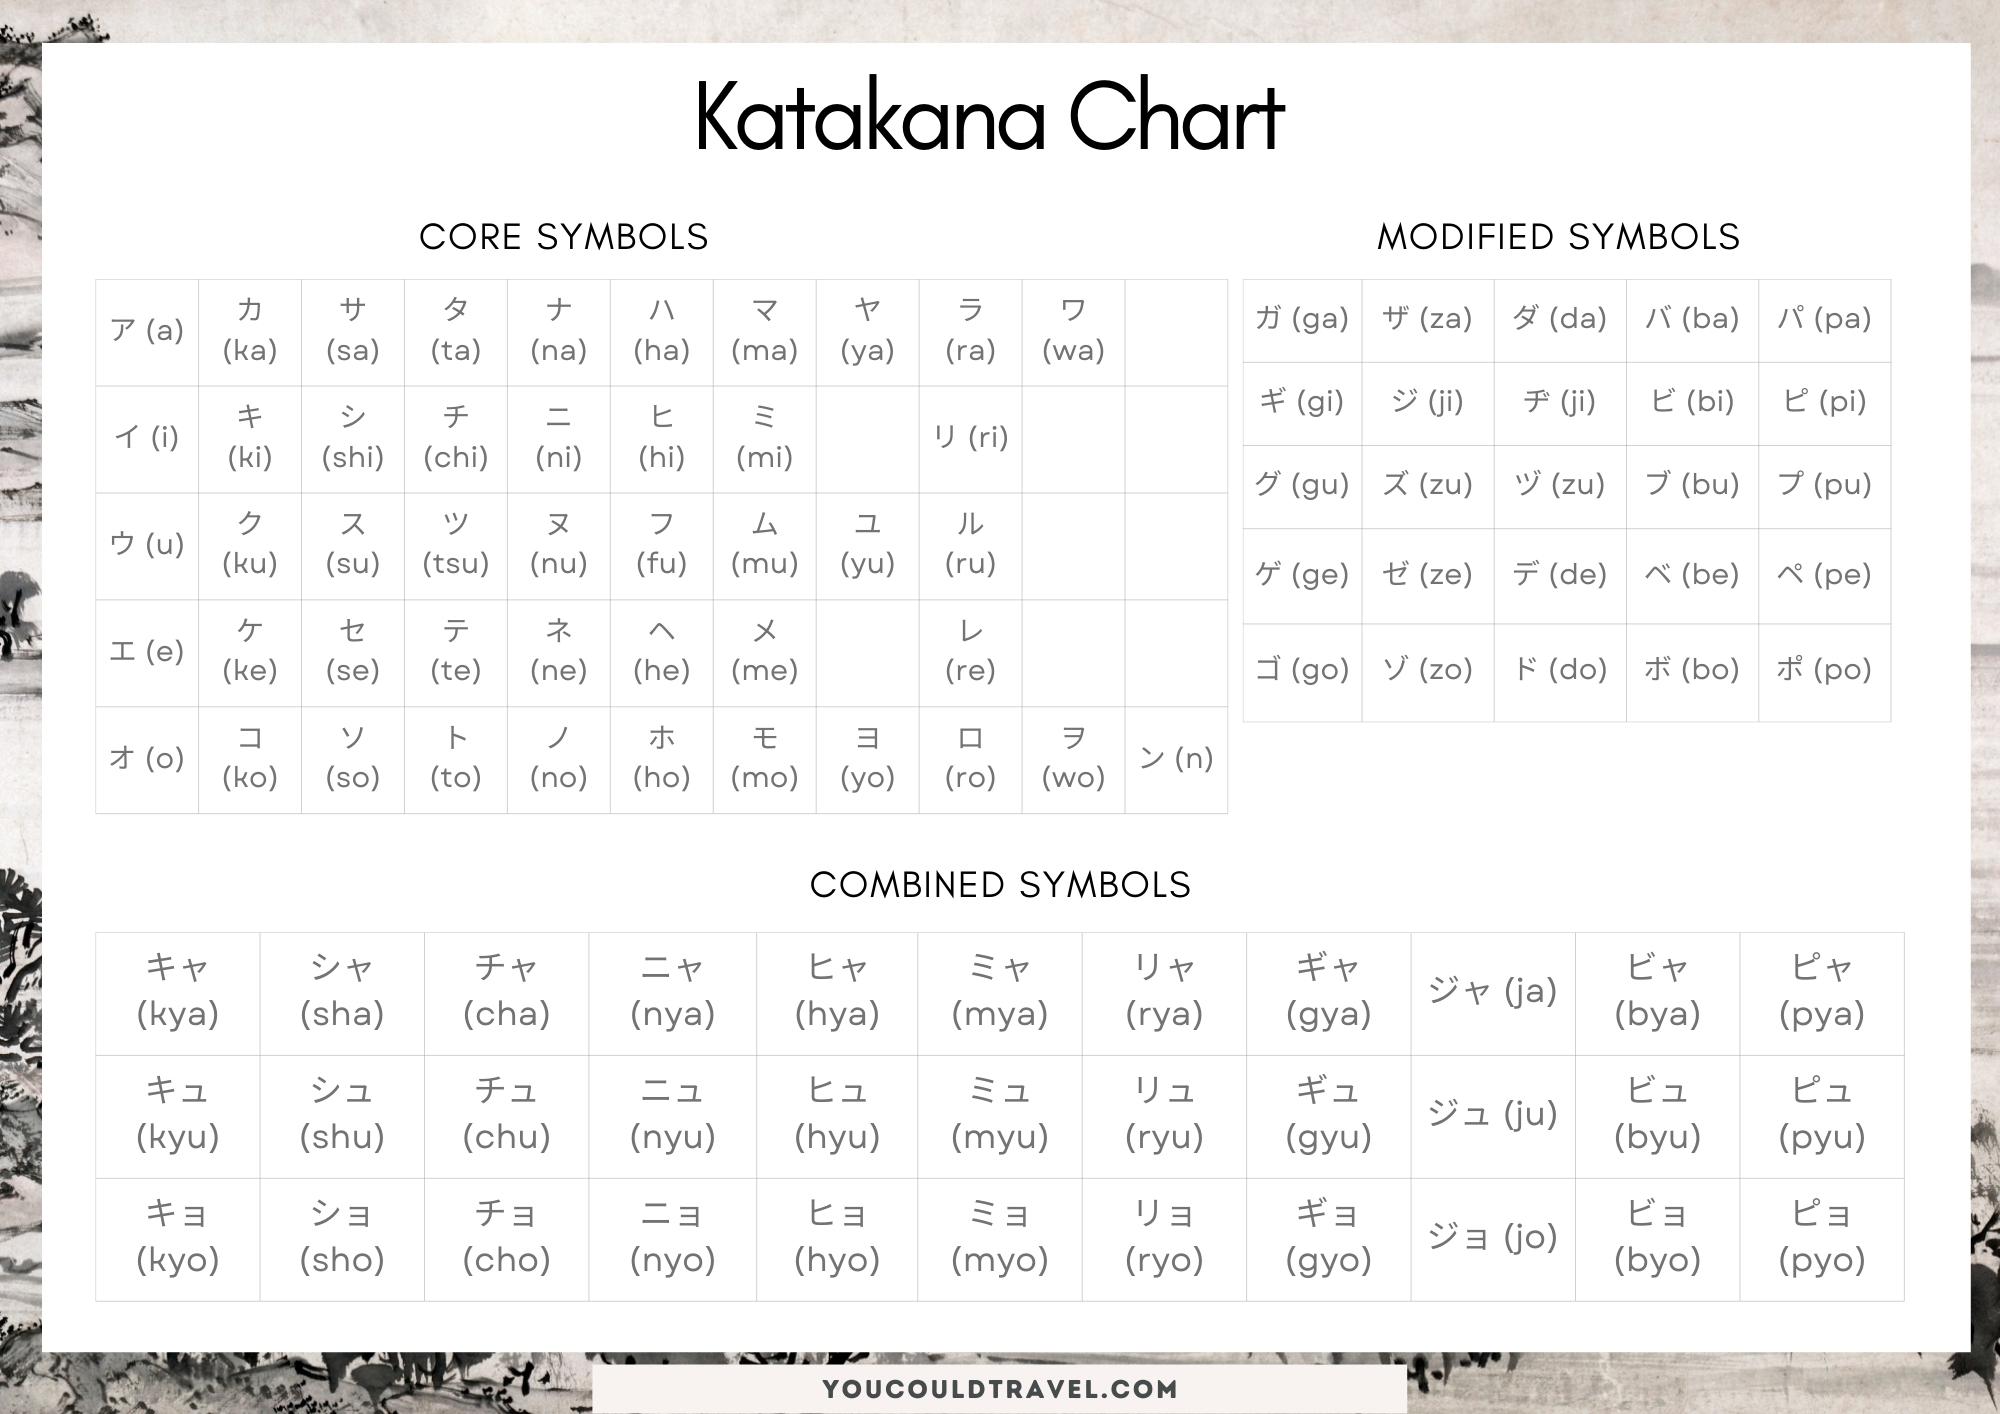 Full katakana chart Japanese language